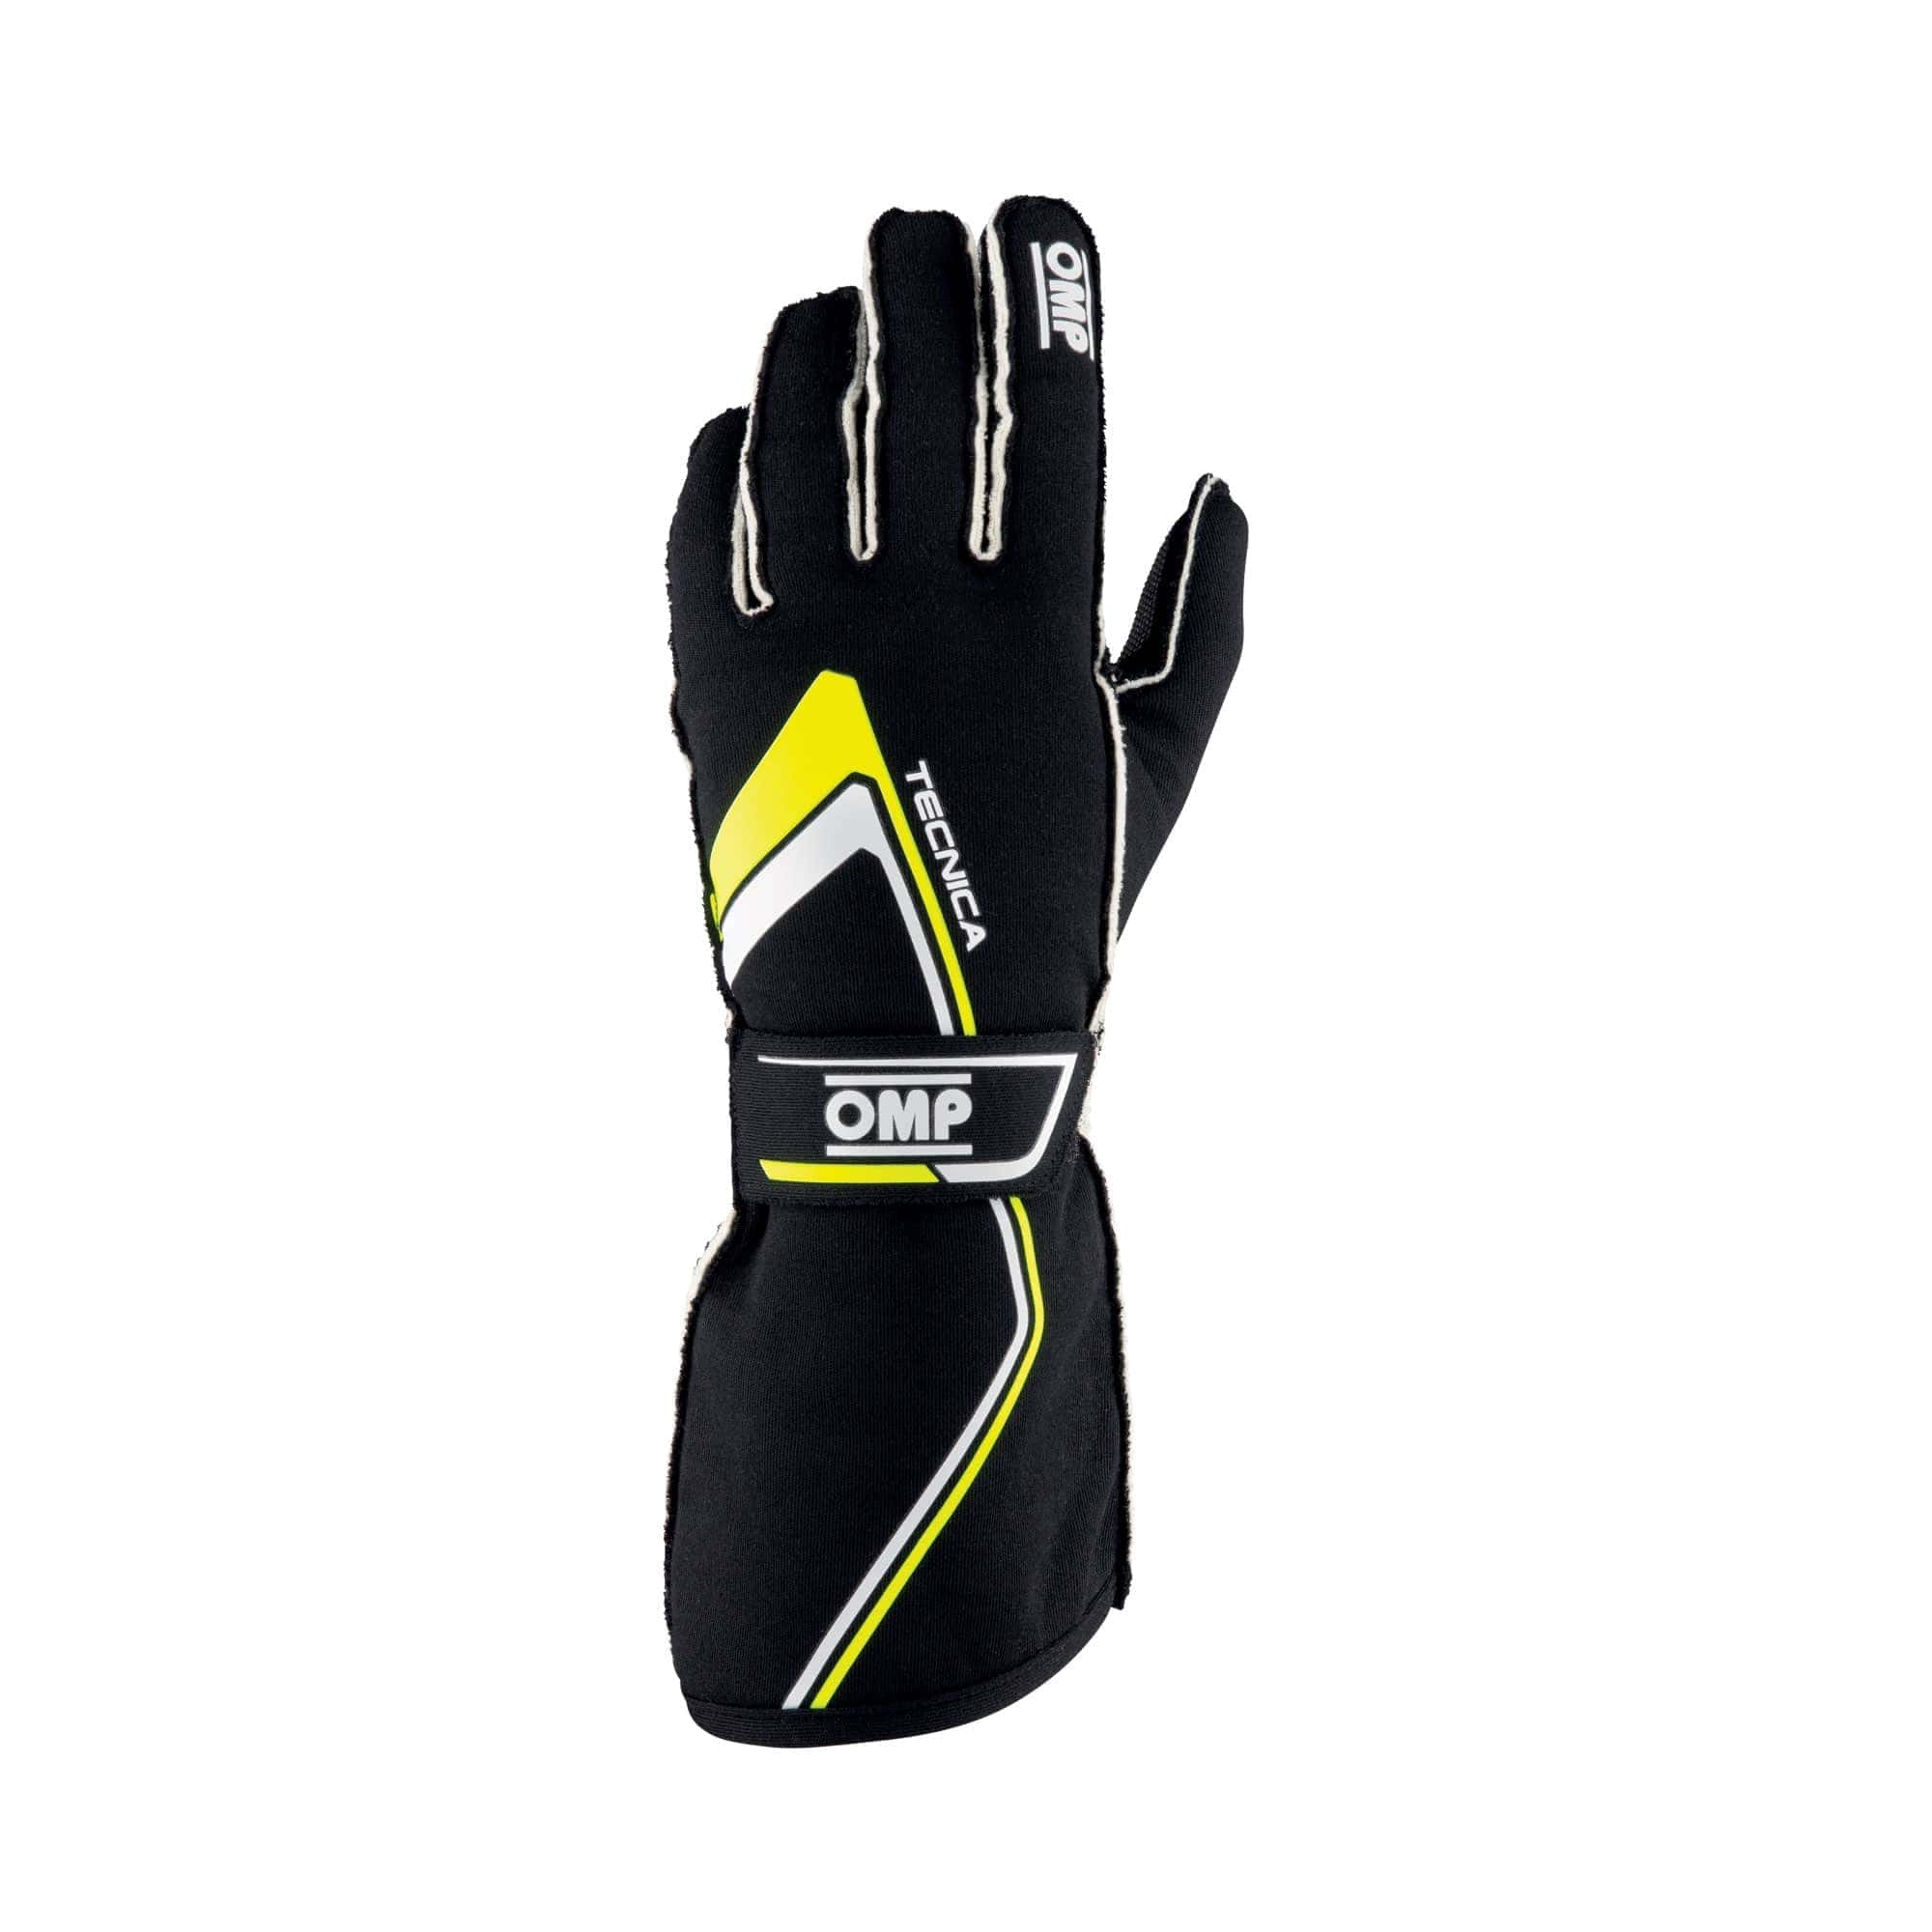 Guanti-Tecnica-Gloves-Omp-Nero-Giallo-Fluo-IB-772-NGI